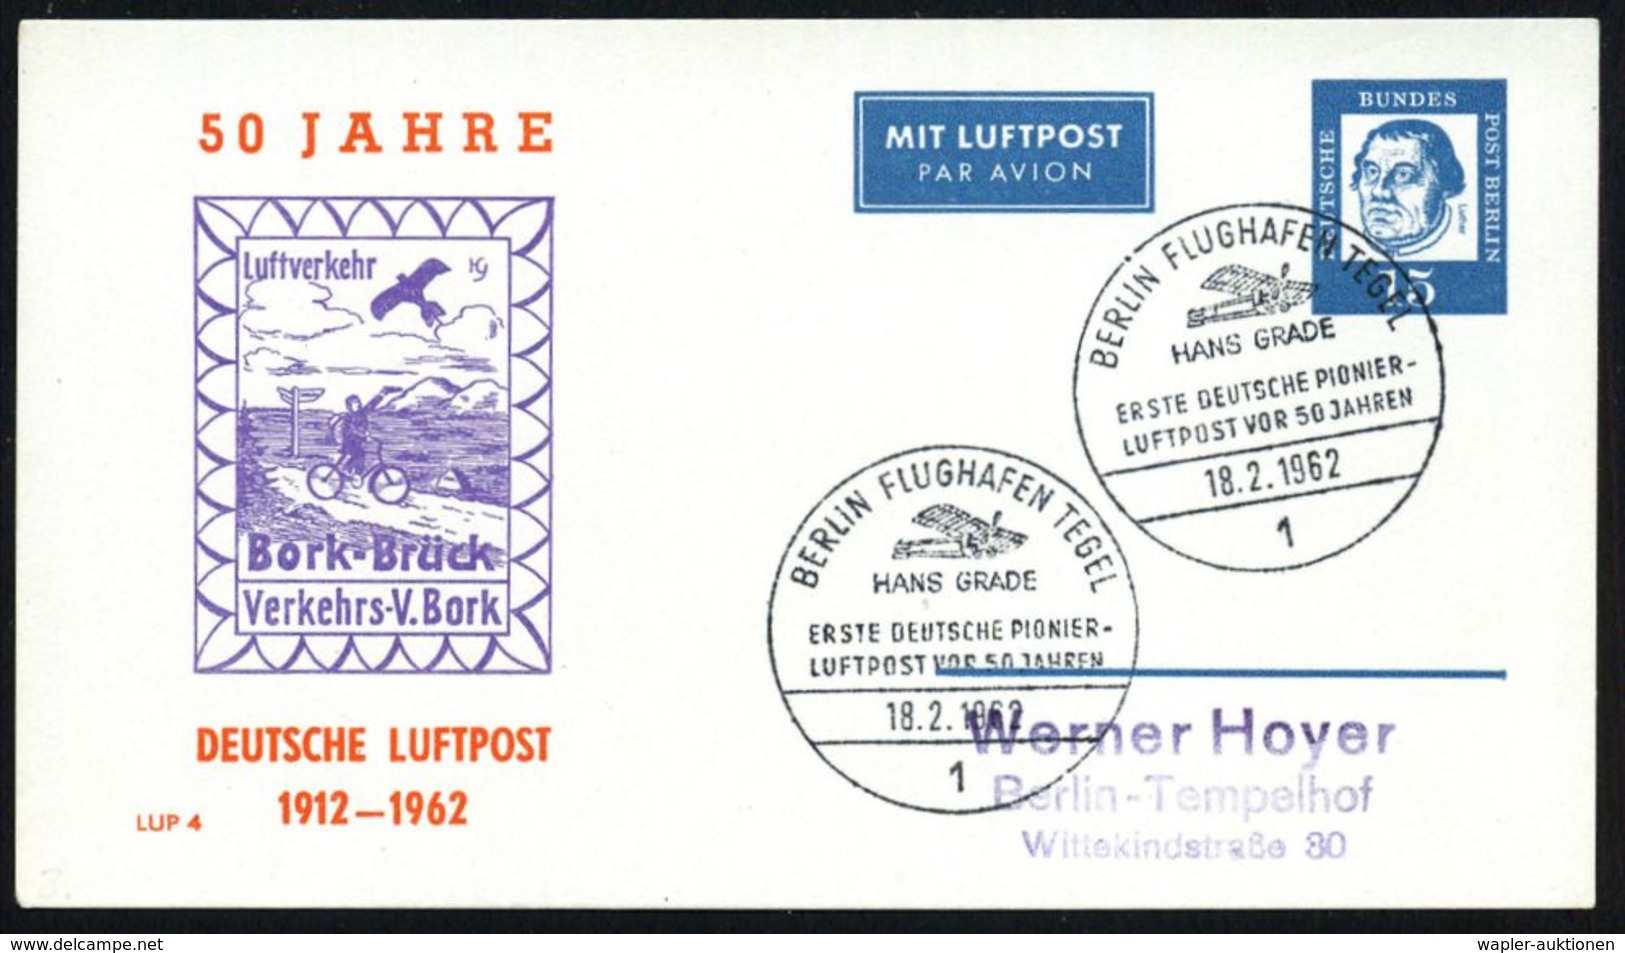 LUFTFAHRT-PIONIERE / PIONIER-FLÜGE : 1 BERLIN FLUGHAFEN TEGEL/ HANS GRADE/ ERSTE DEUTSCHE PIONIER-/ LUFTPOST.. 1962 (18. - Autres (Air)